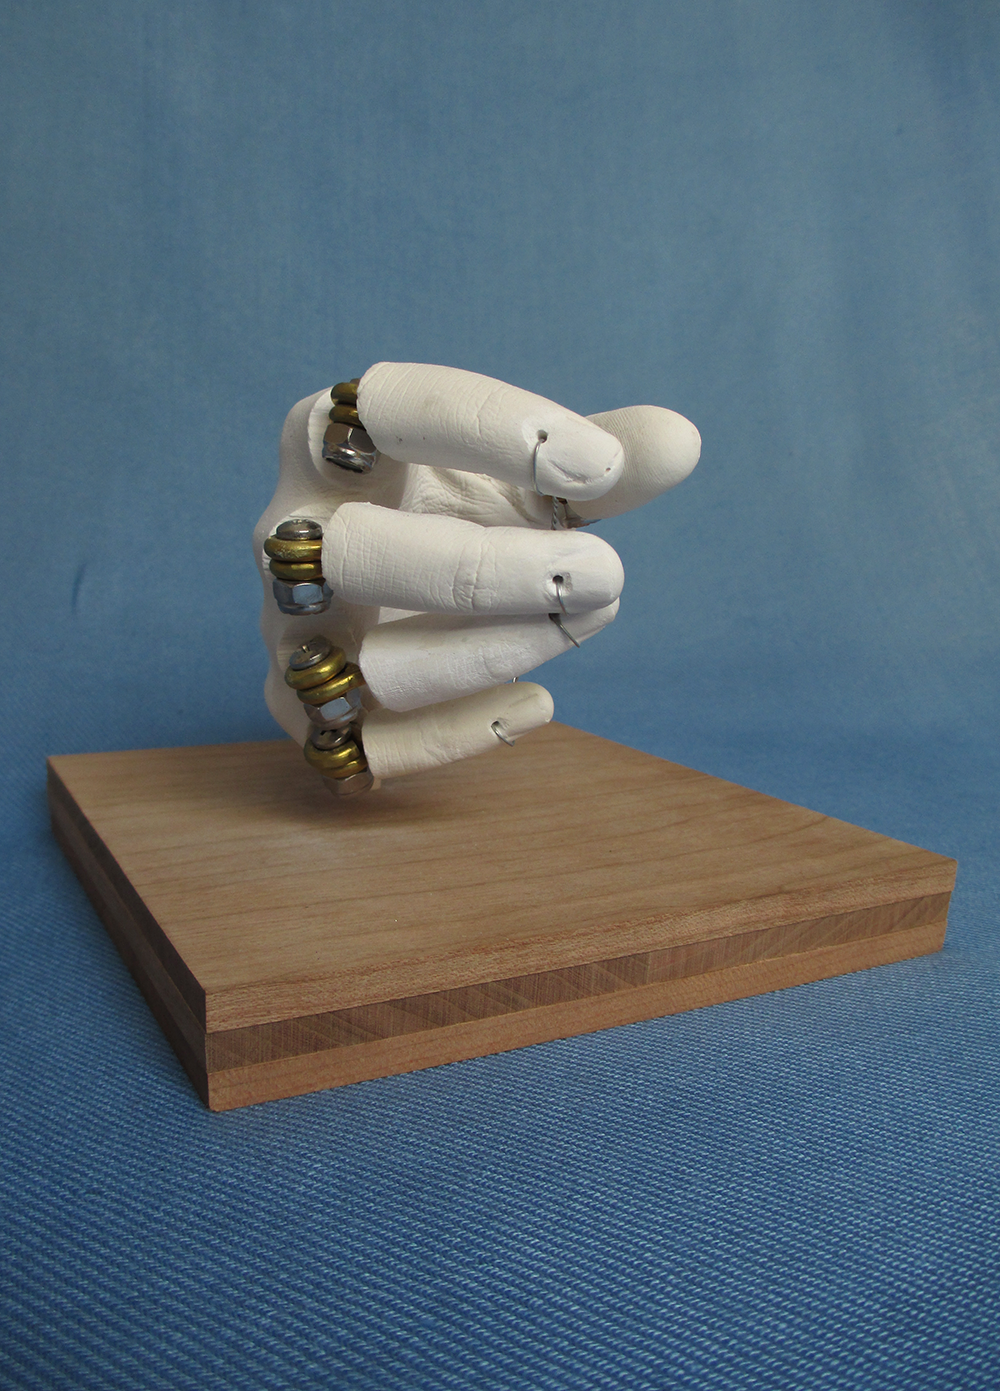 plaster hand cast  sculpture hinges pencil writer parsons 2013 